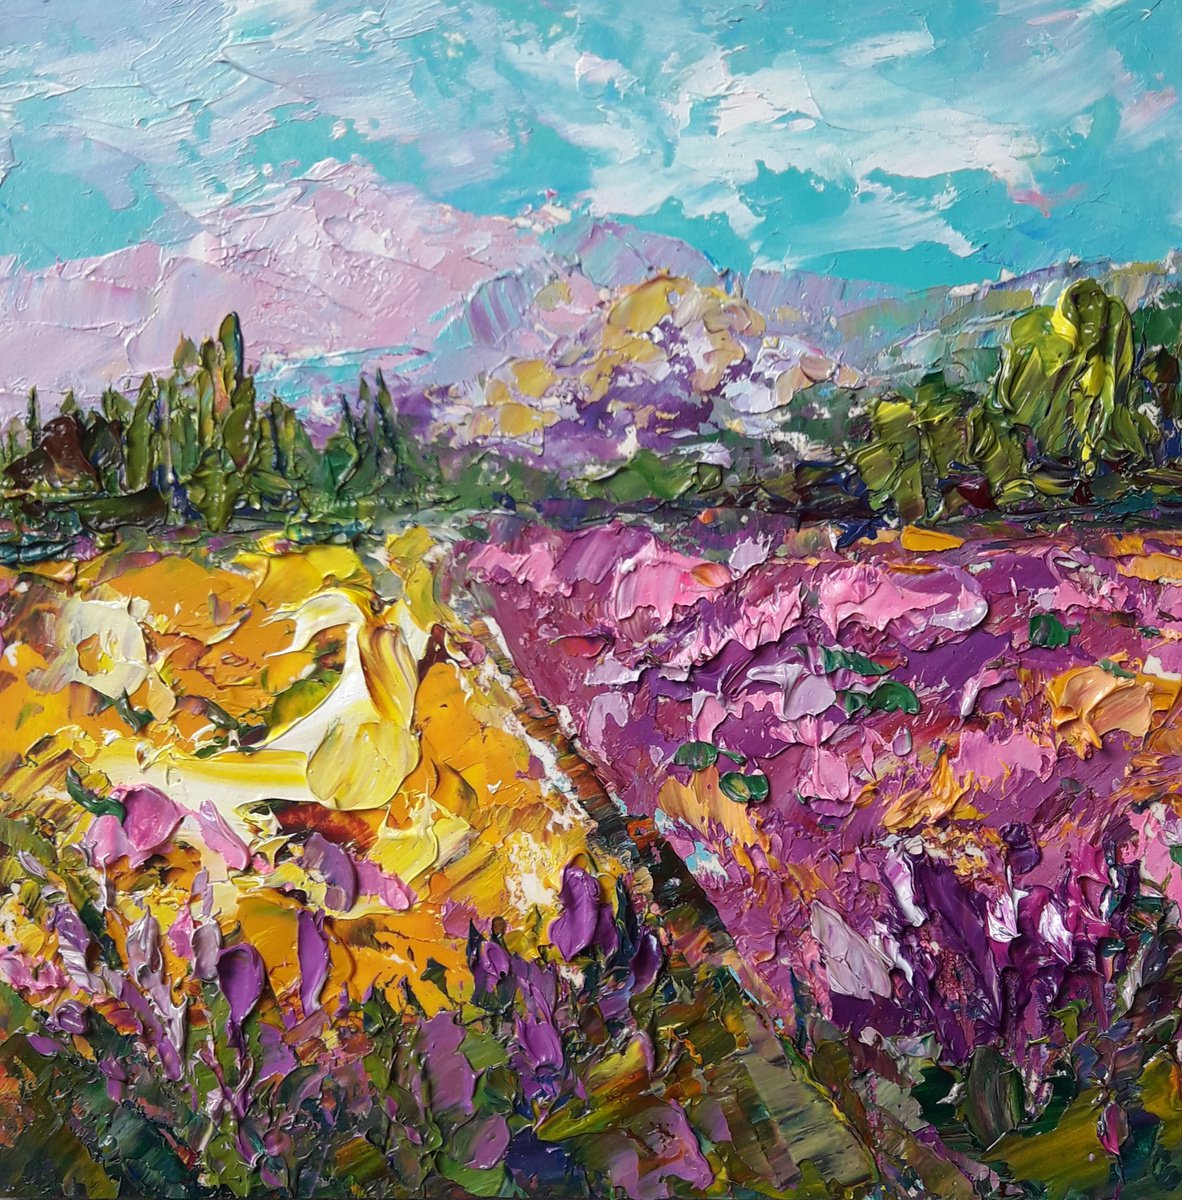 painting Mountain Landscape of Tuscany Italy Flower Painting, Art Painting by Kseniya Kova... by Kseniya Kovalenko